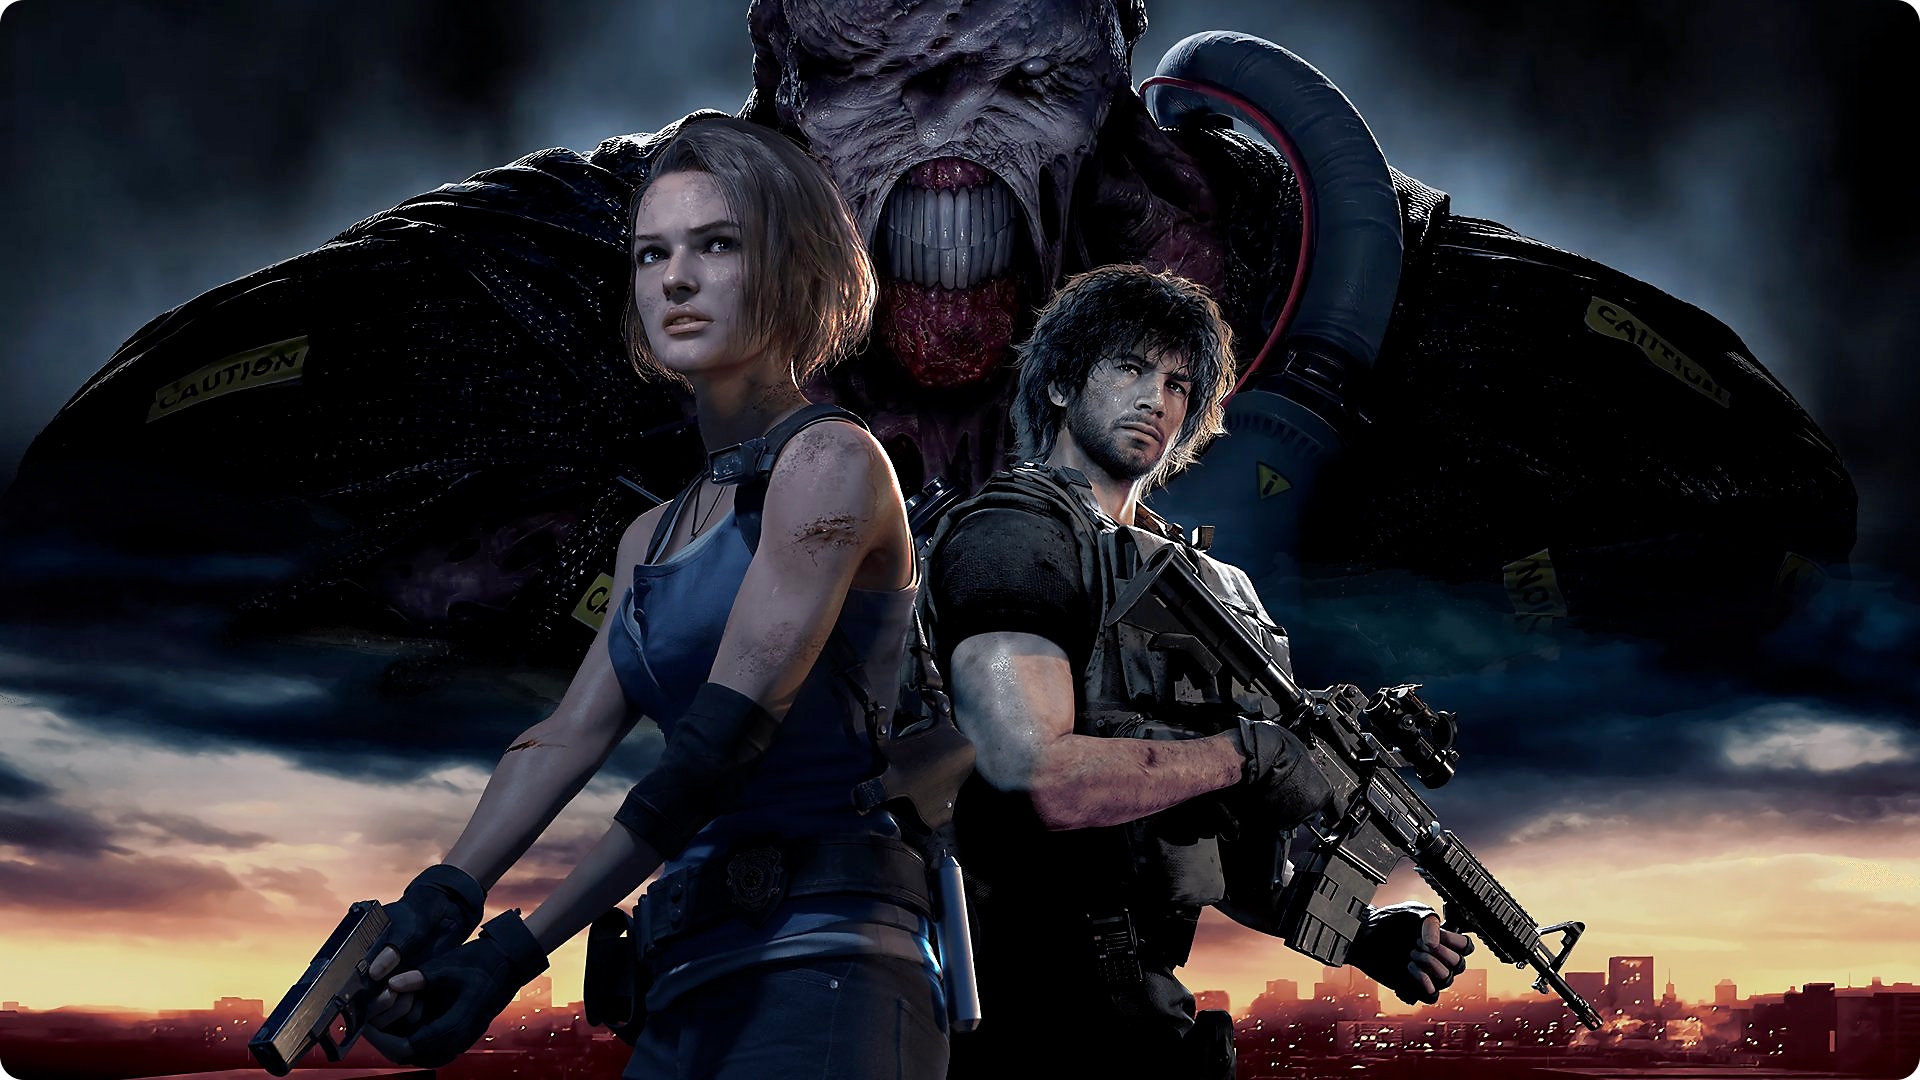 Resident Evil 3 – slikovno gradivo s prikazom glavnih likov Jill in Carlosa v ospredju in glavnega antagonista Nemesisa v ozadju. 